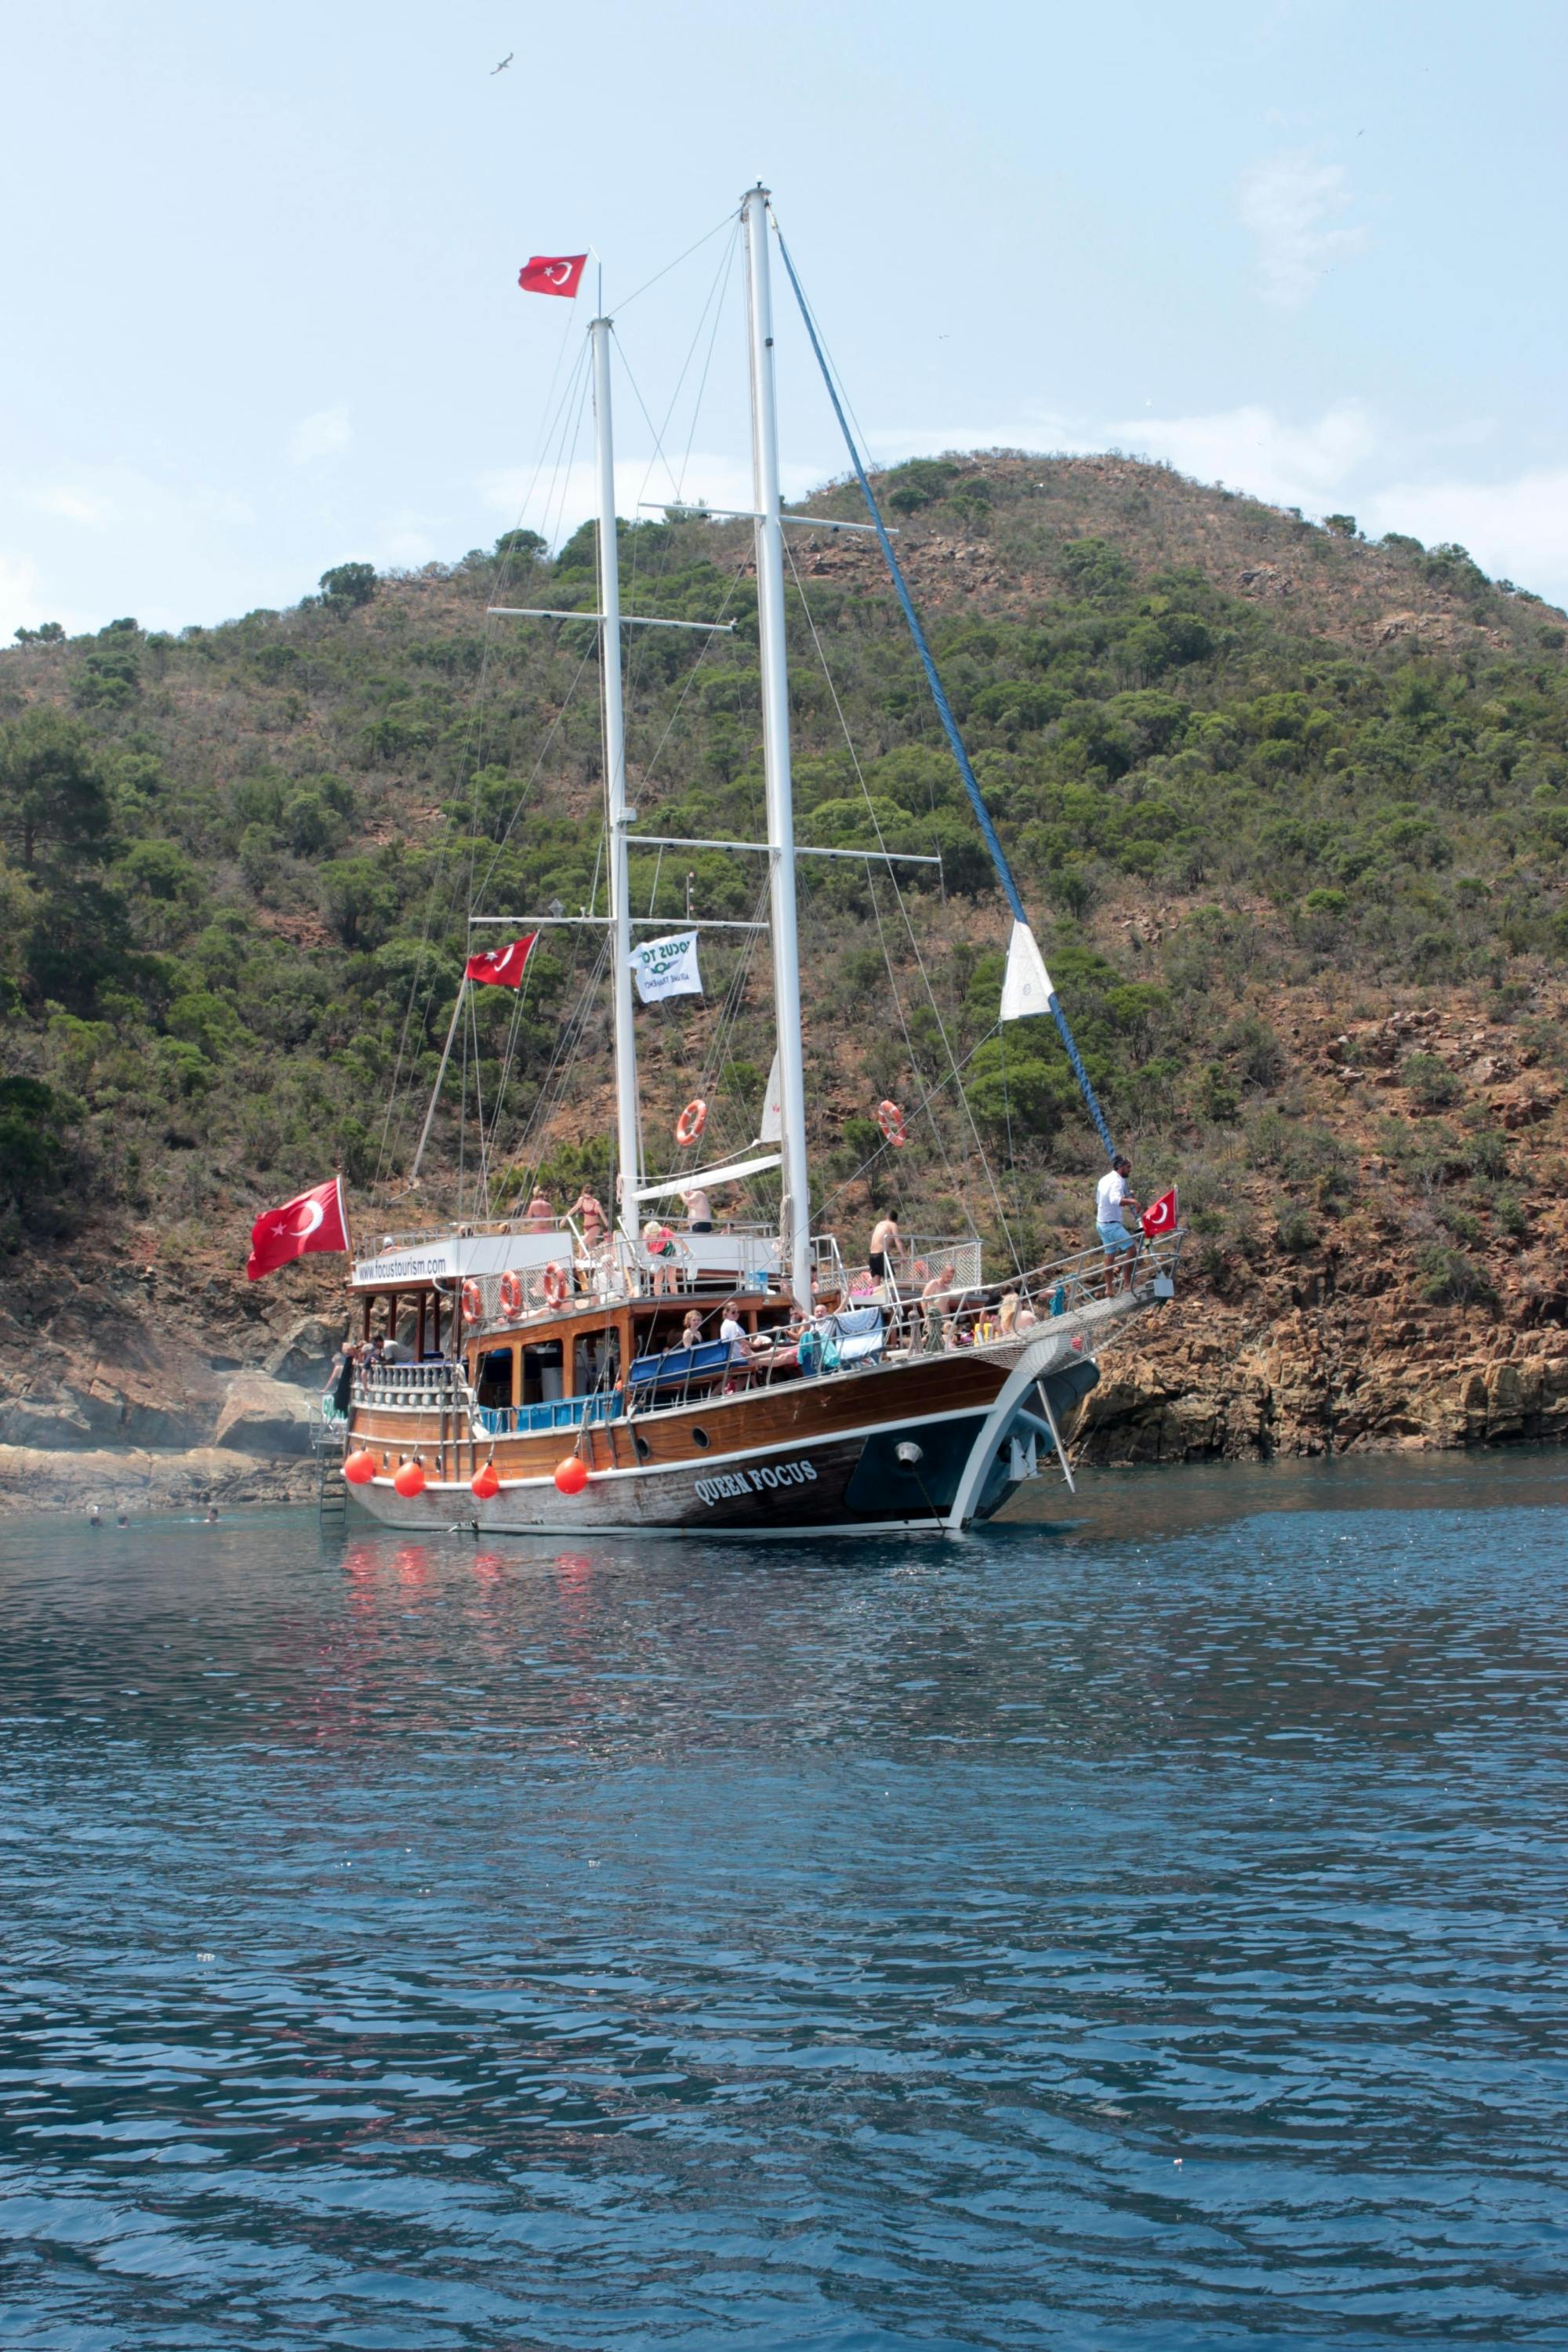 Fethiye Boat Cruise